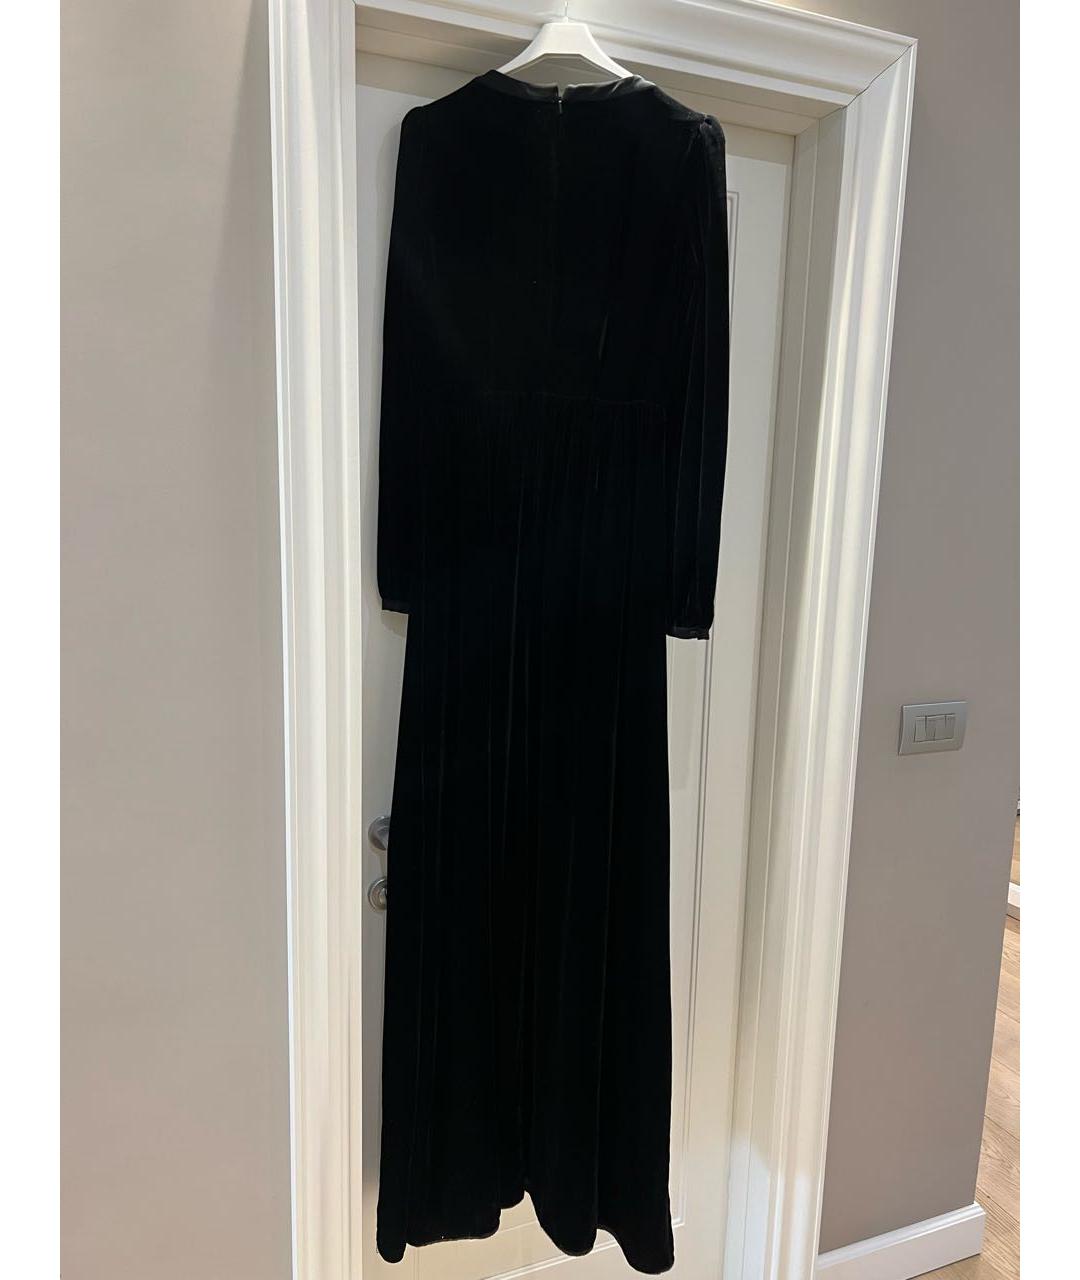 SALONI Черное бархатное вечернее платье, фото 3